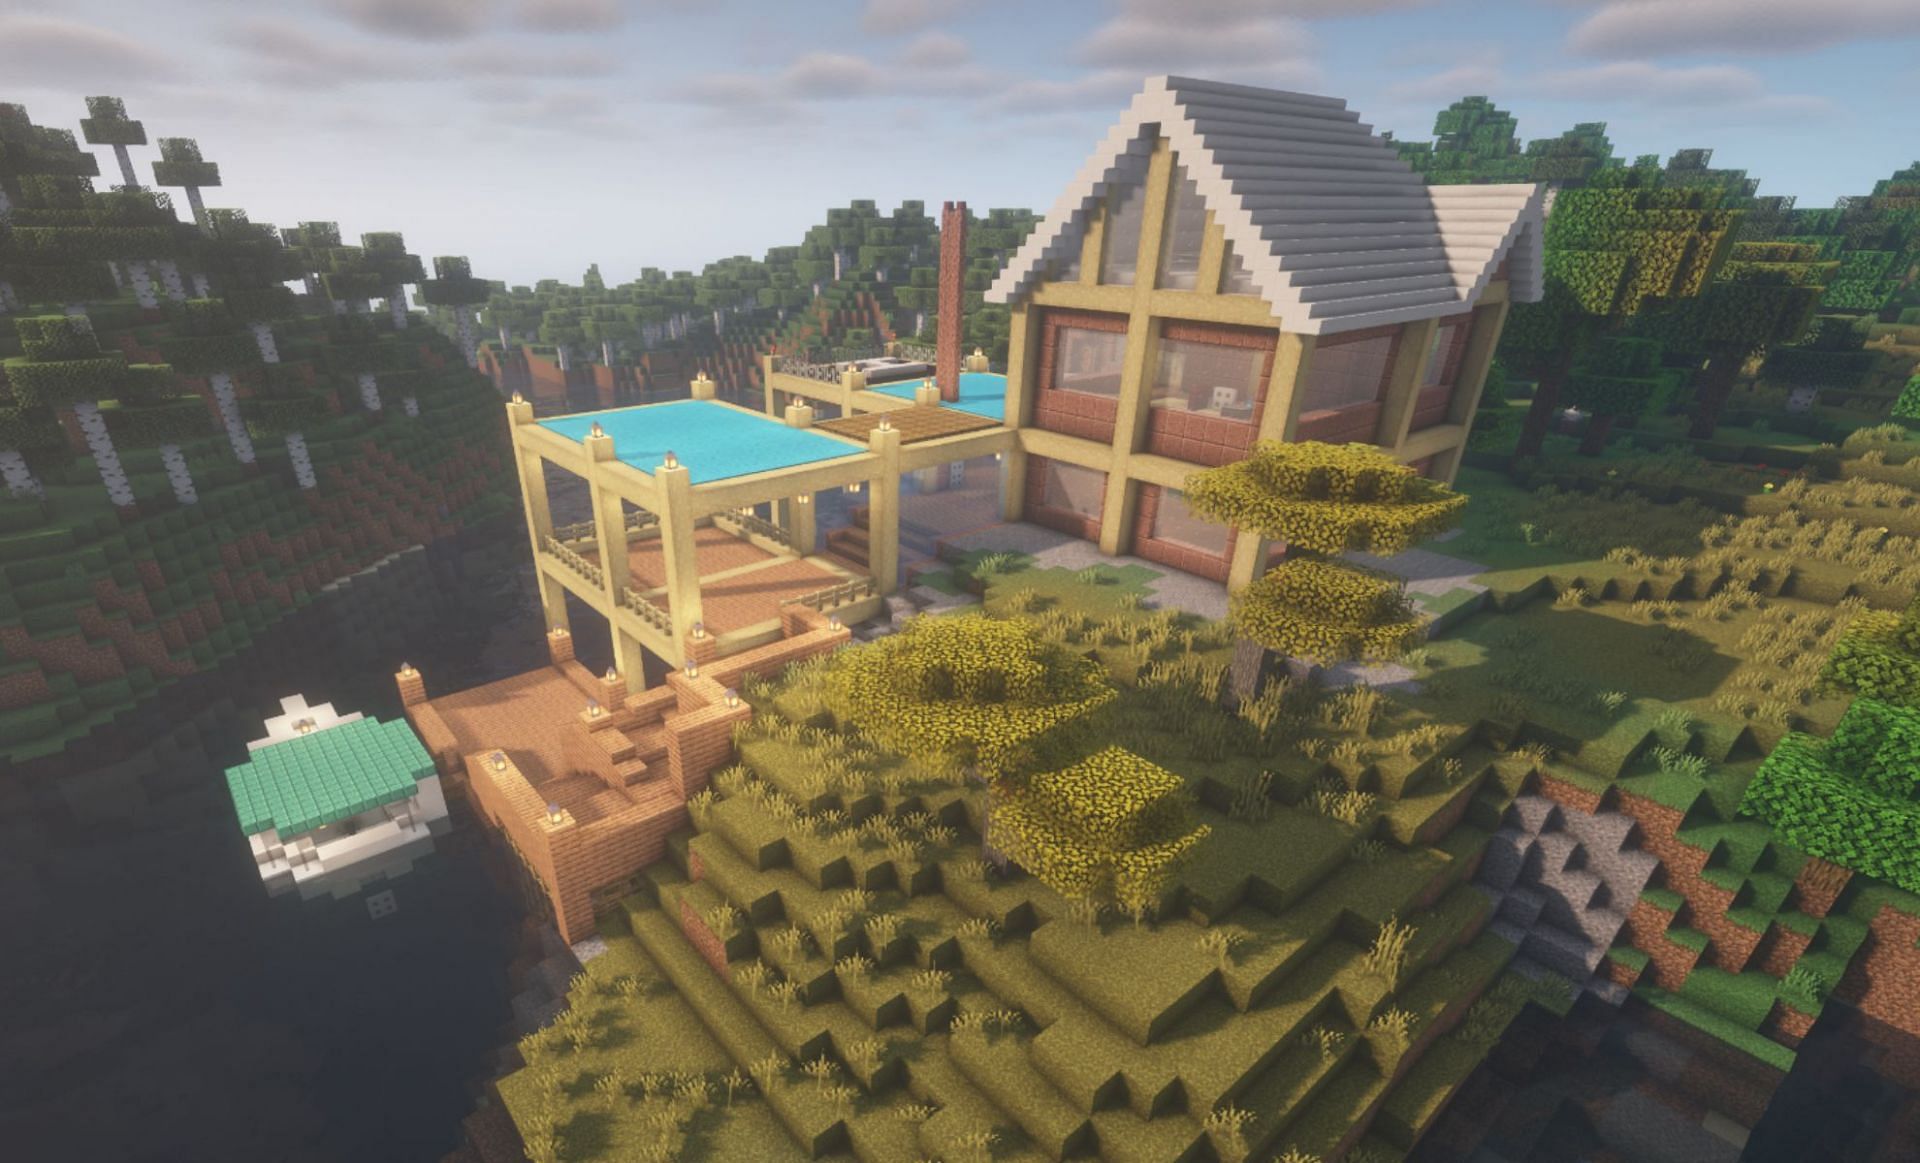 River house build (Image via u/Illustrious_Divide26 on Reddit)